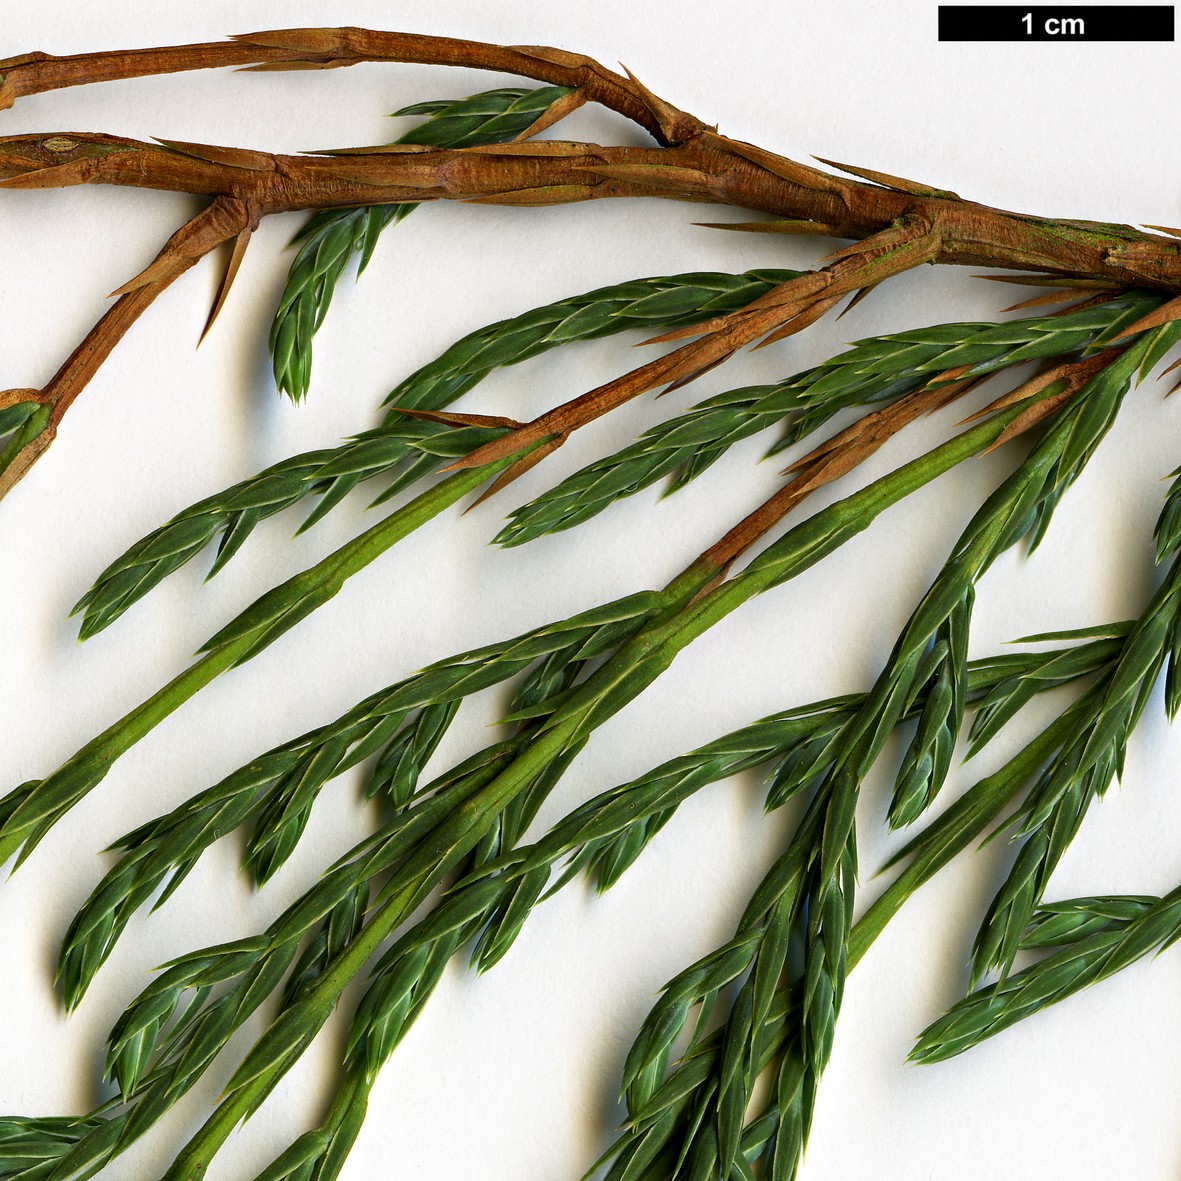 High resolution image: Family: Cupressaceae - Genus: Juniperus - Taxon: recurva - SpeciesSub: var. recurva